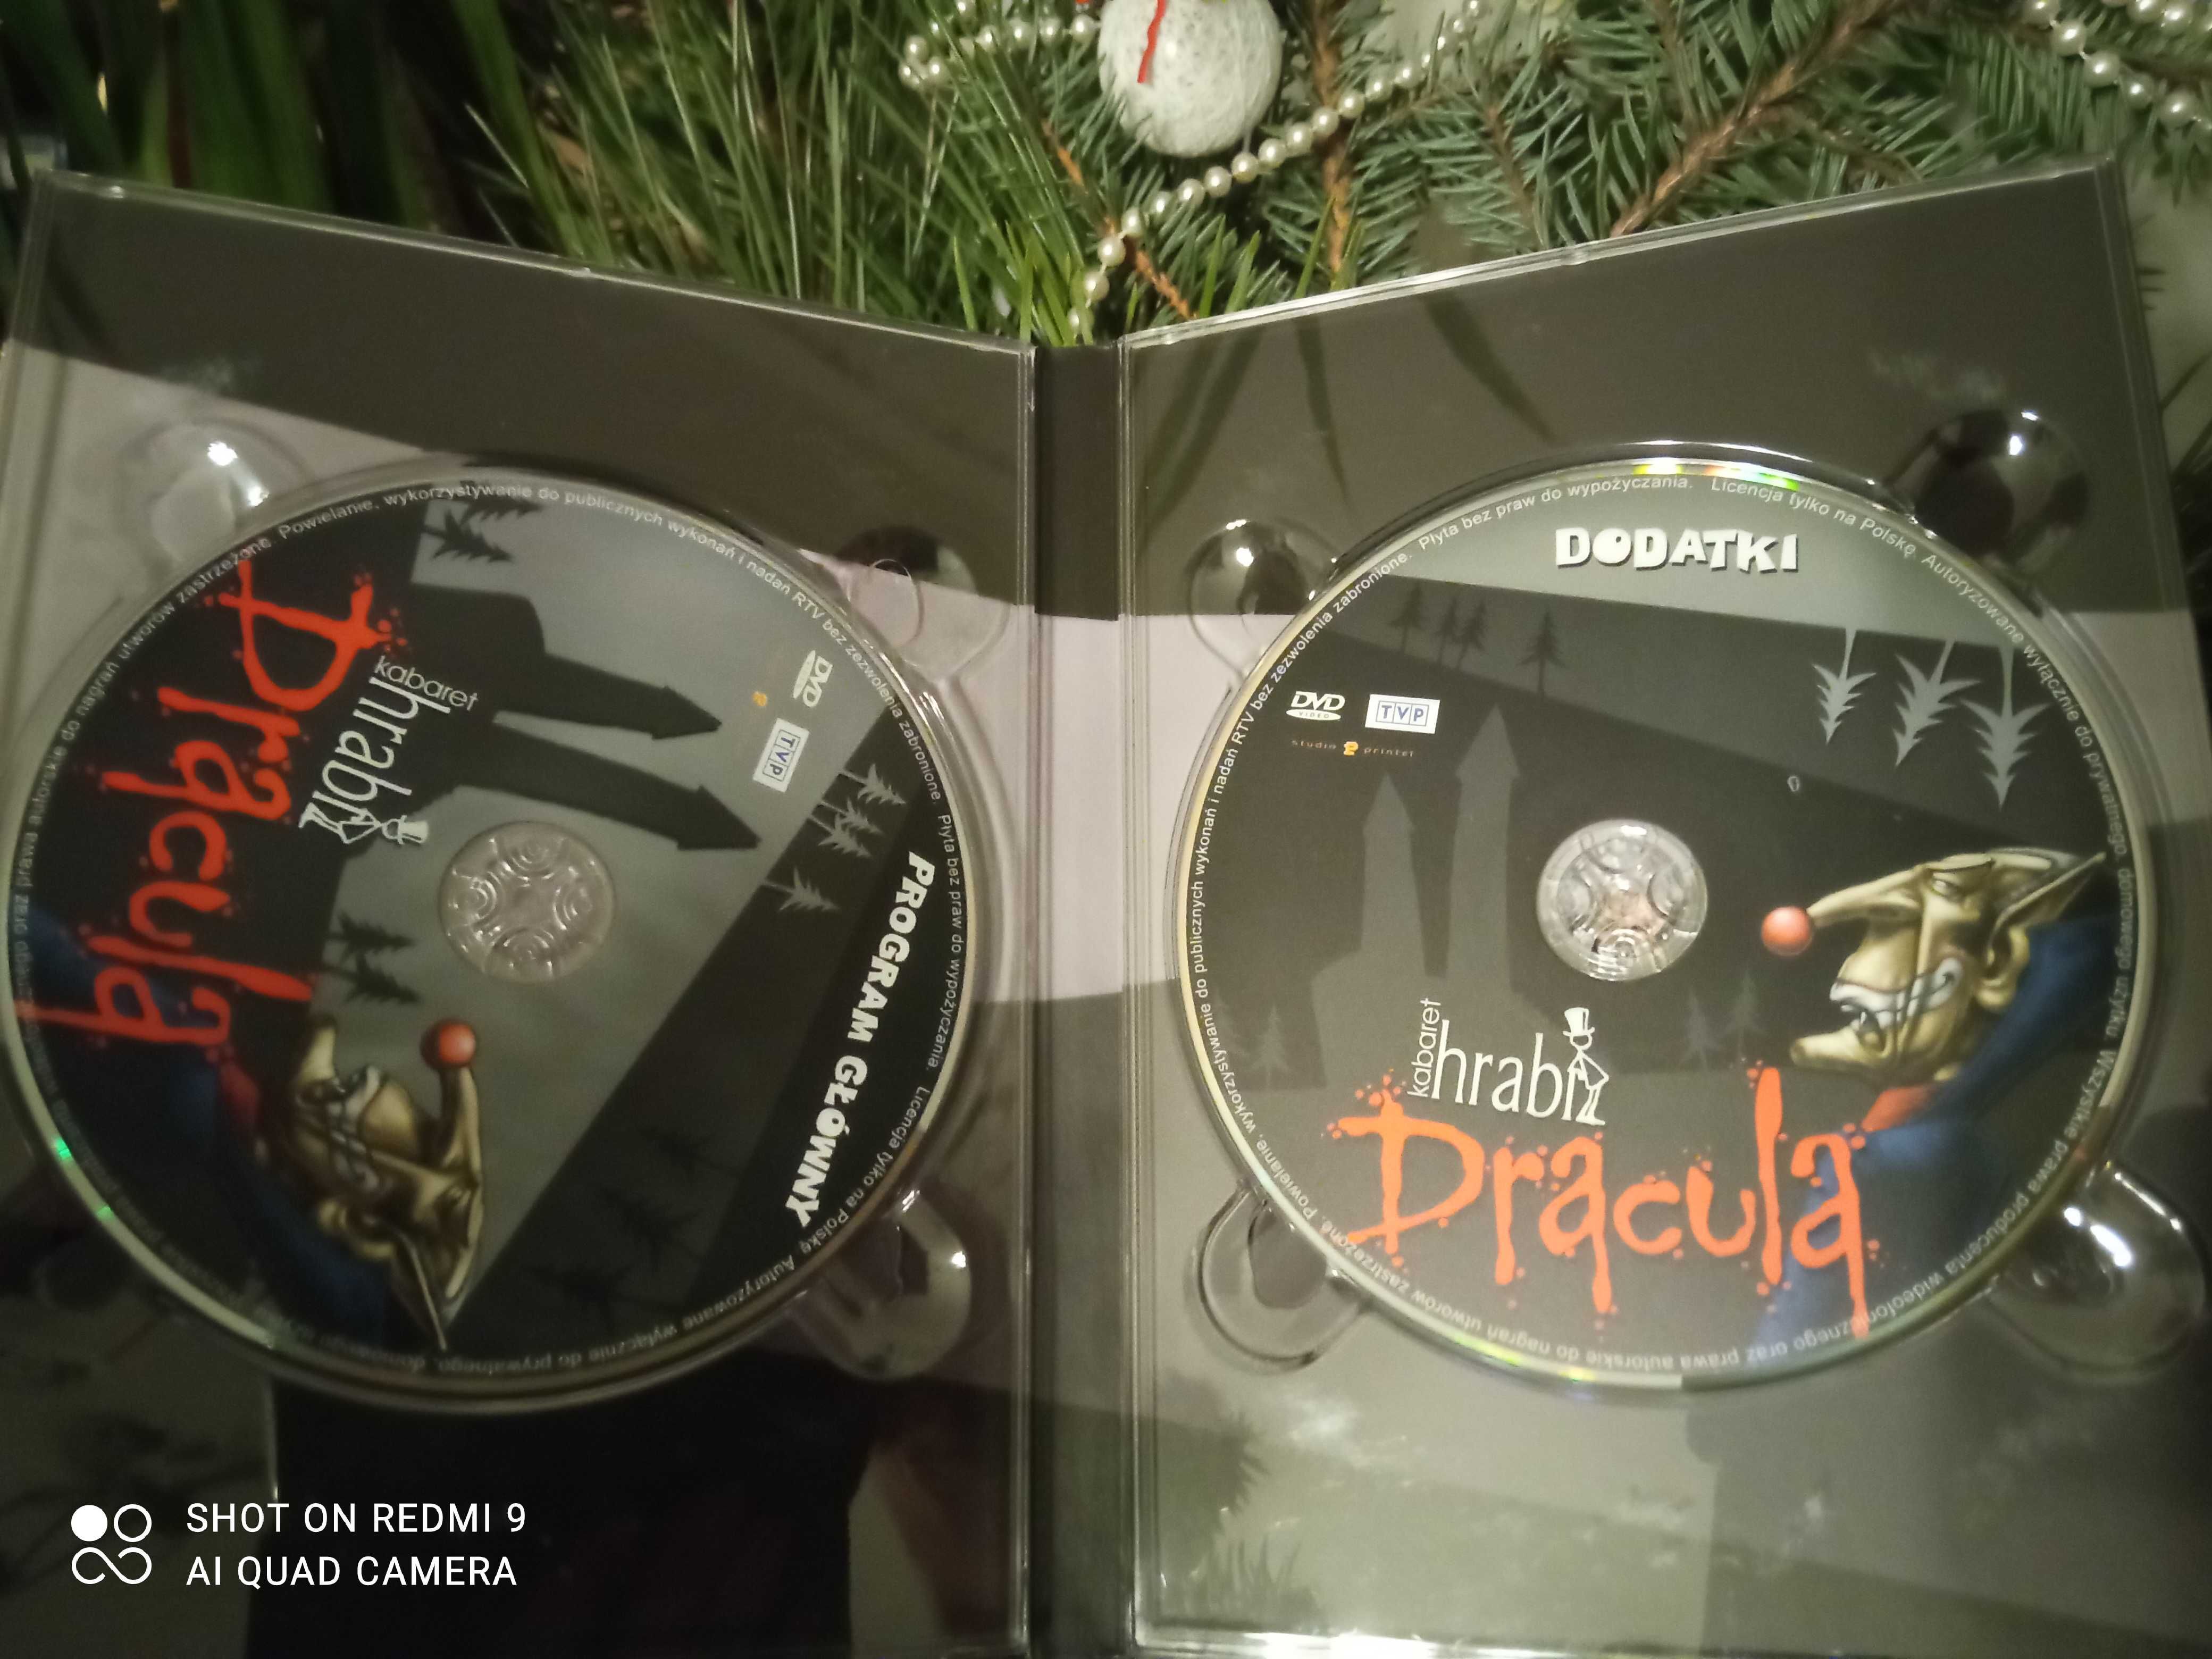 Kabaret Hrabi Dracula wydanie dwupłytowe dvd z autografami